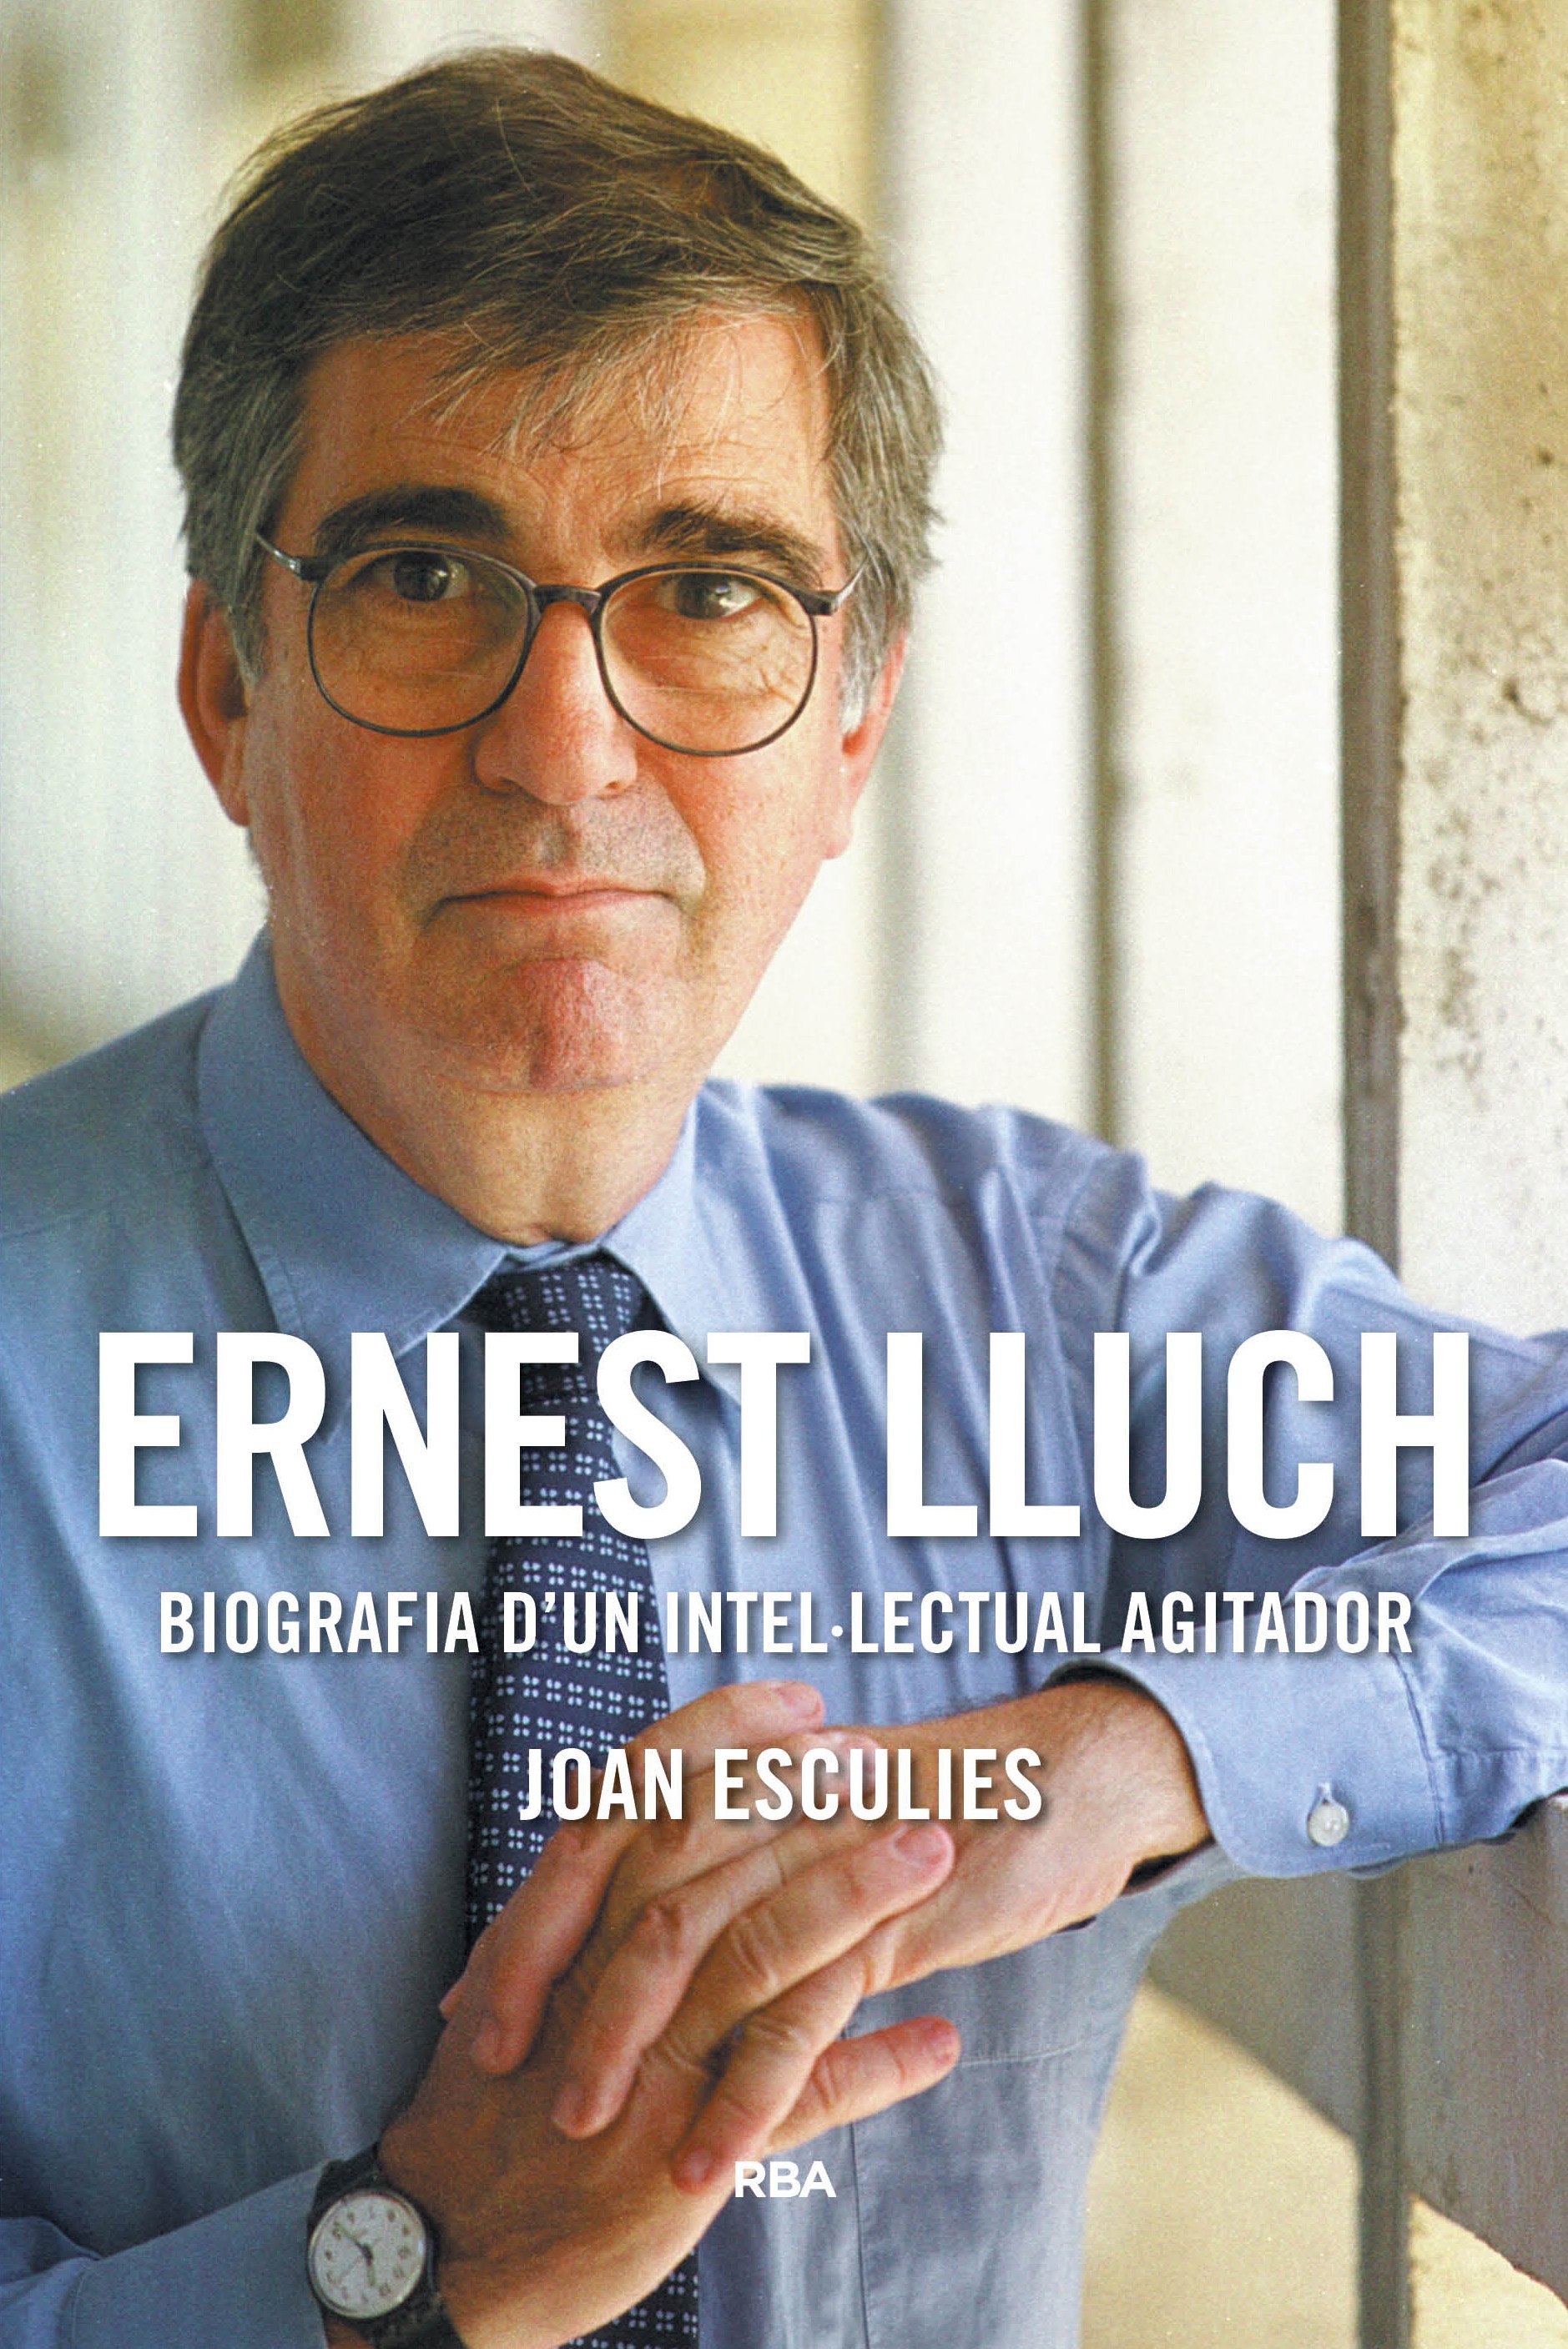 Joan Esculies: "Ernest Lluch merecía una biografía aunque no lo hubieran matado"